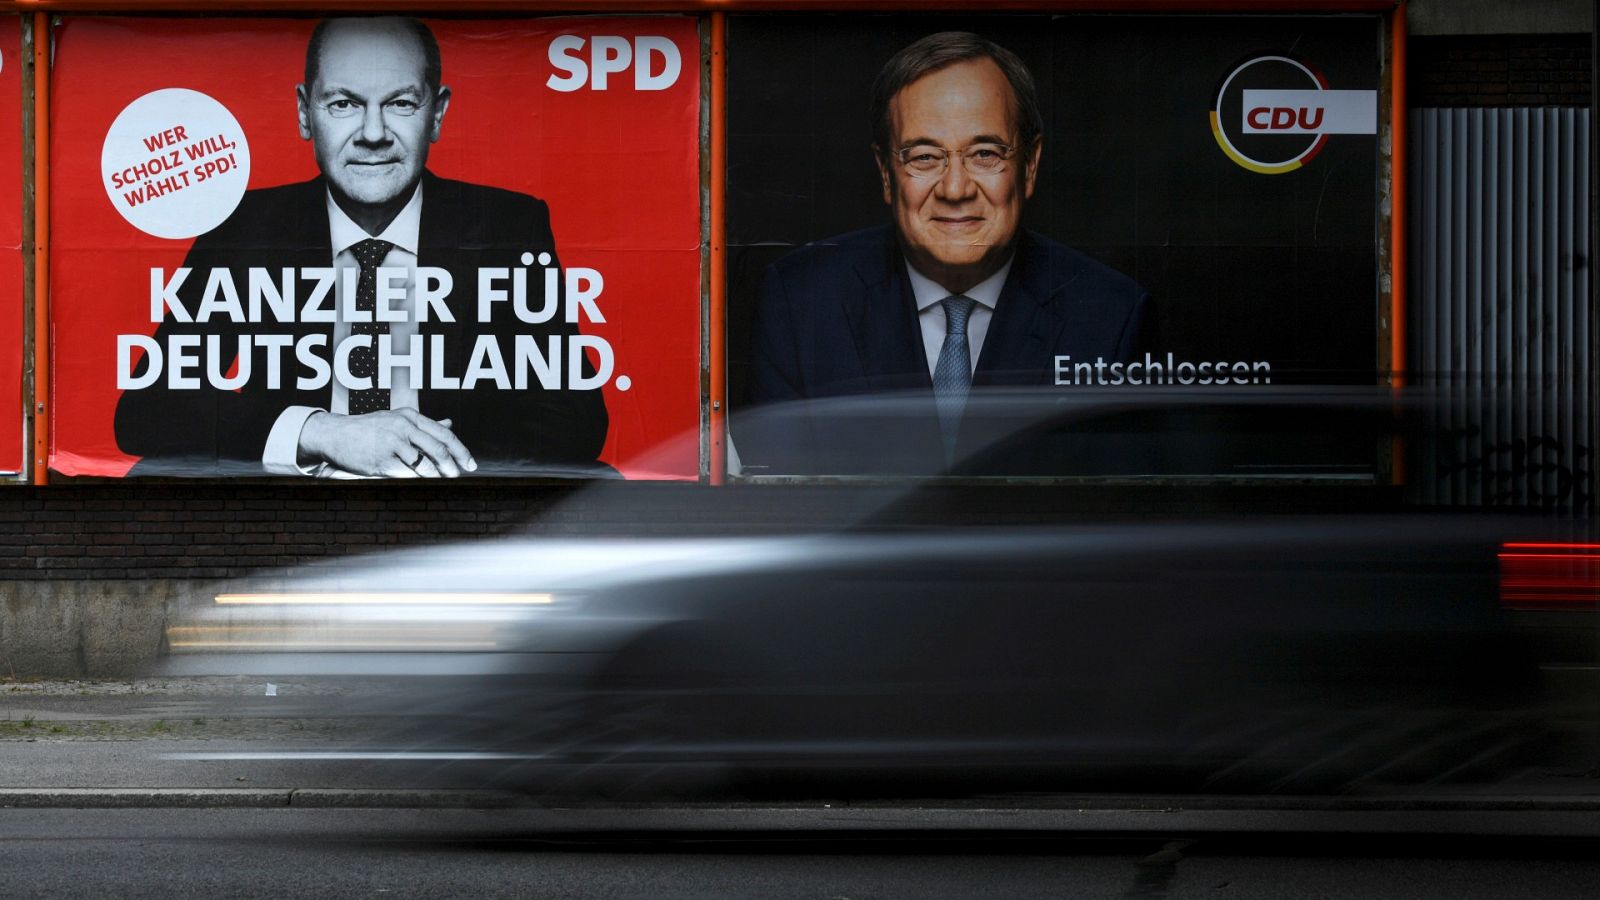 Elecciones alemanas 2021: Carteles con los candidatos Olaf Scholz (SPD) y Armin Laschet (CDU)